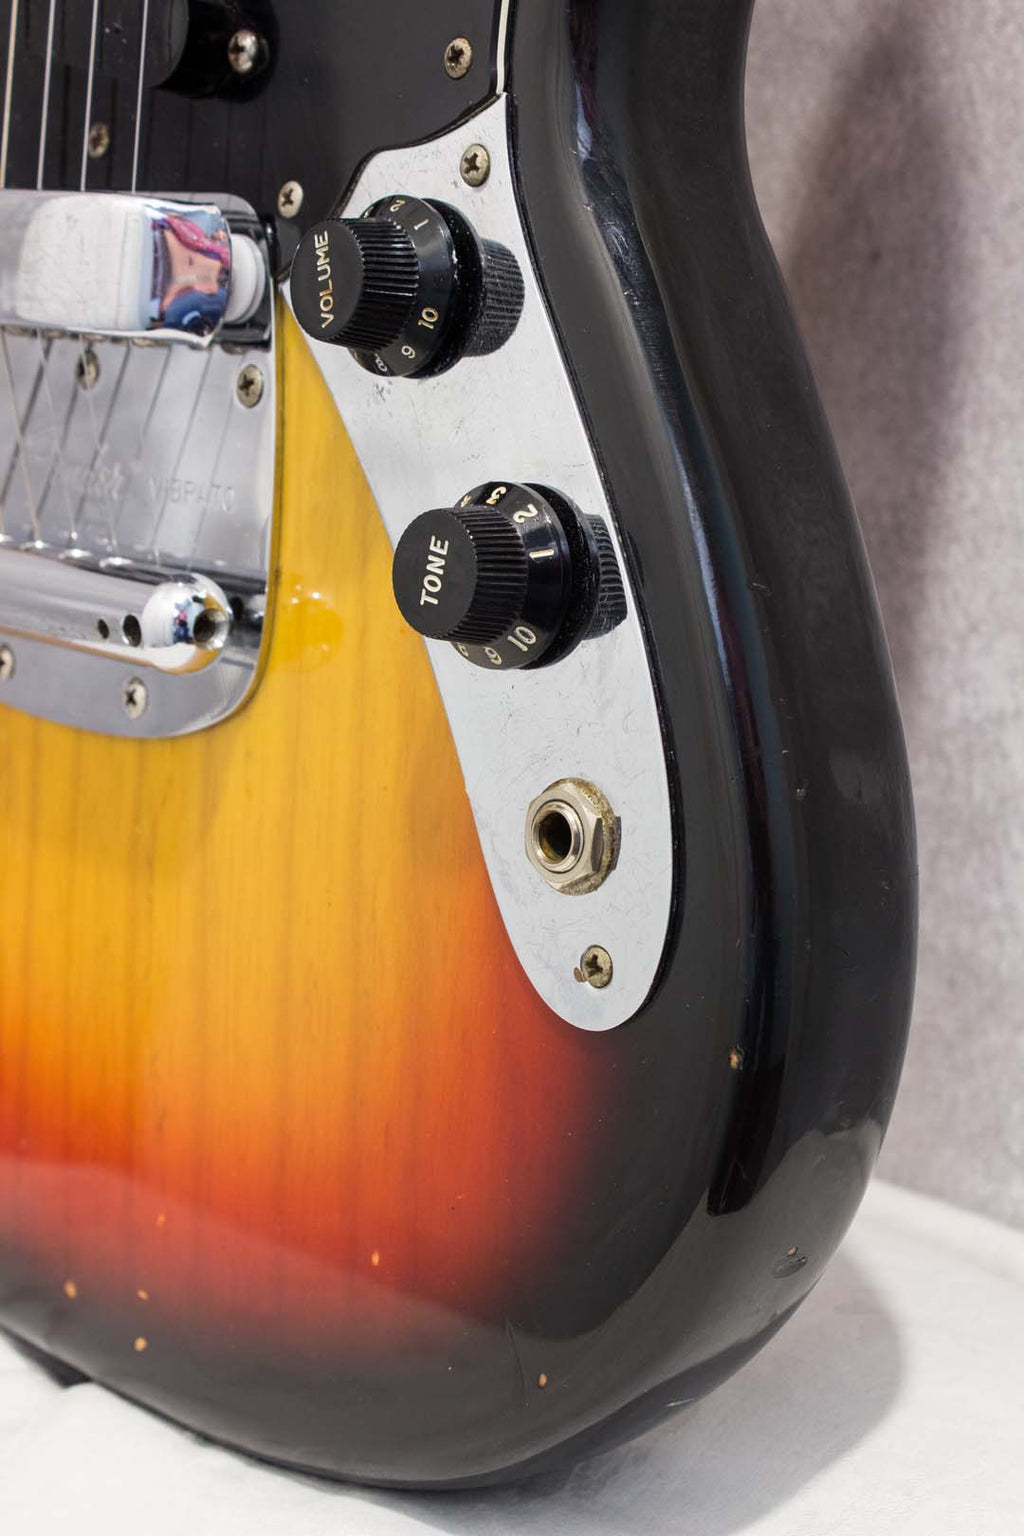 Fender Mustang Sunburst 1977